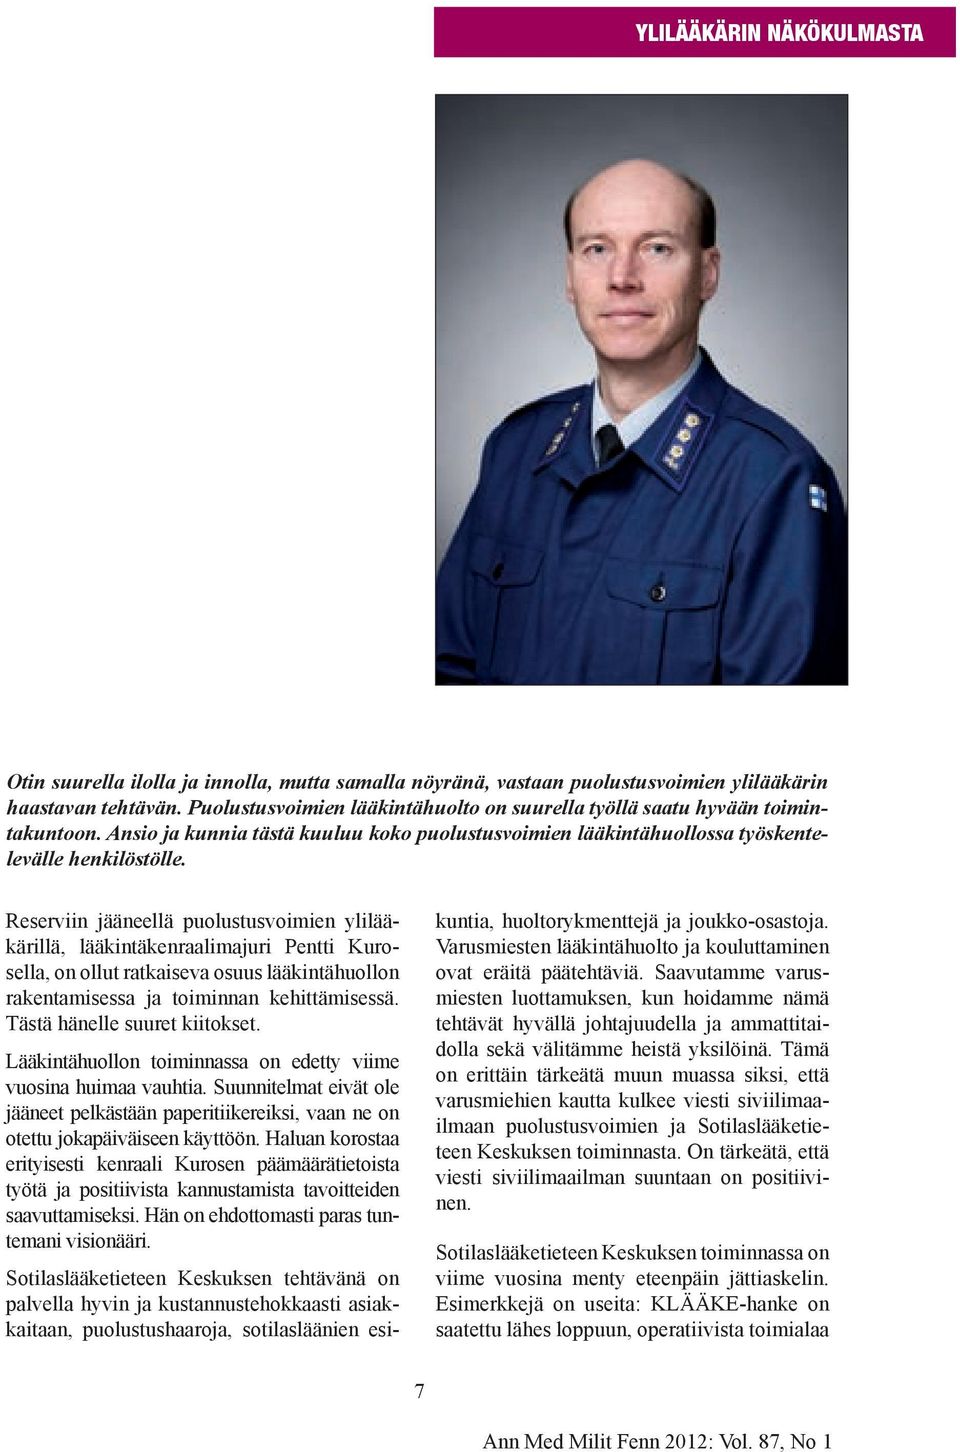 Reserviin jääneellä puolustusvoimien ylilääkärillä, lääkintäkenraalimajuri Pentti Kurosella, on ollut ratkaiseva osuus lääkintähuollon rakentamisessa ja toiminnan kehittämisessä.